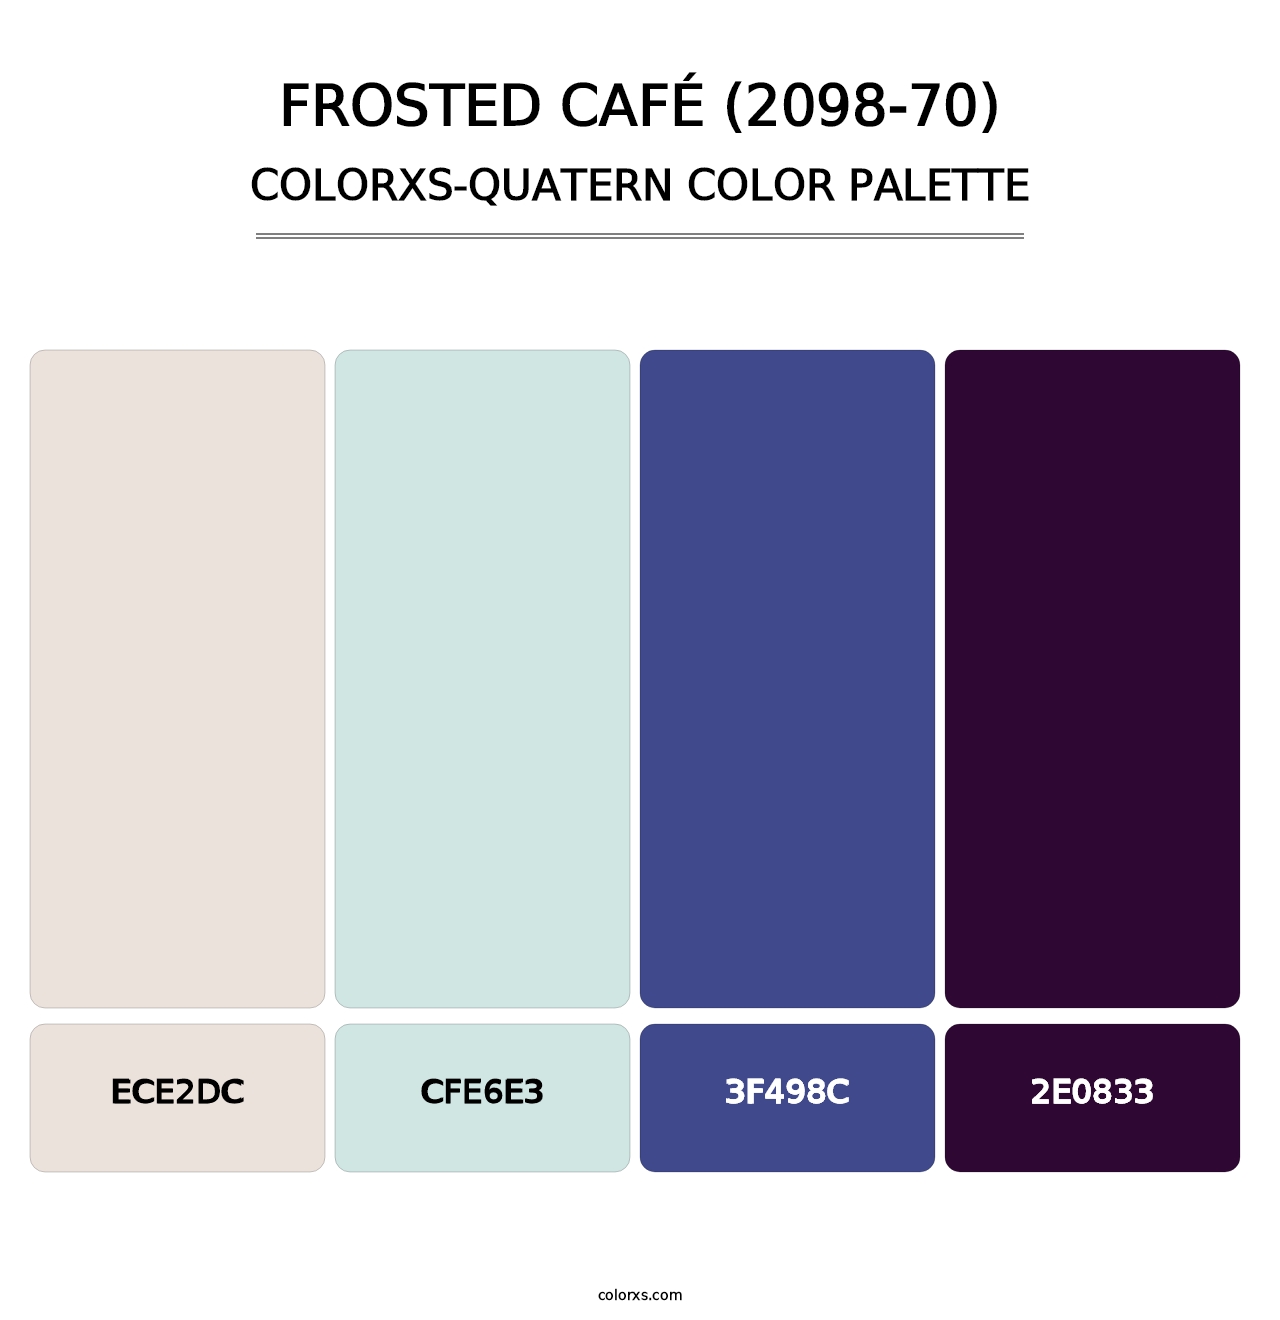 Frosted Café (2098-70) - Colorxs Quatern Palette